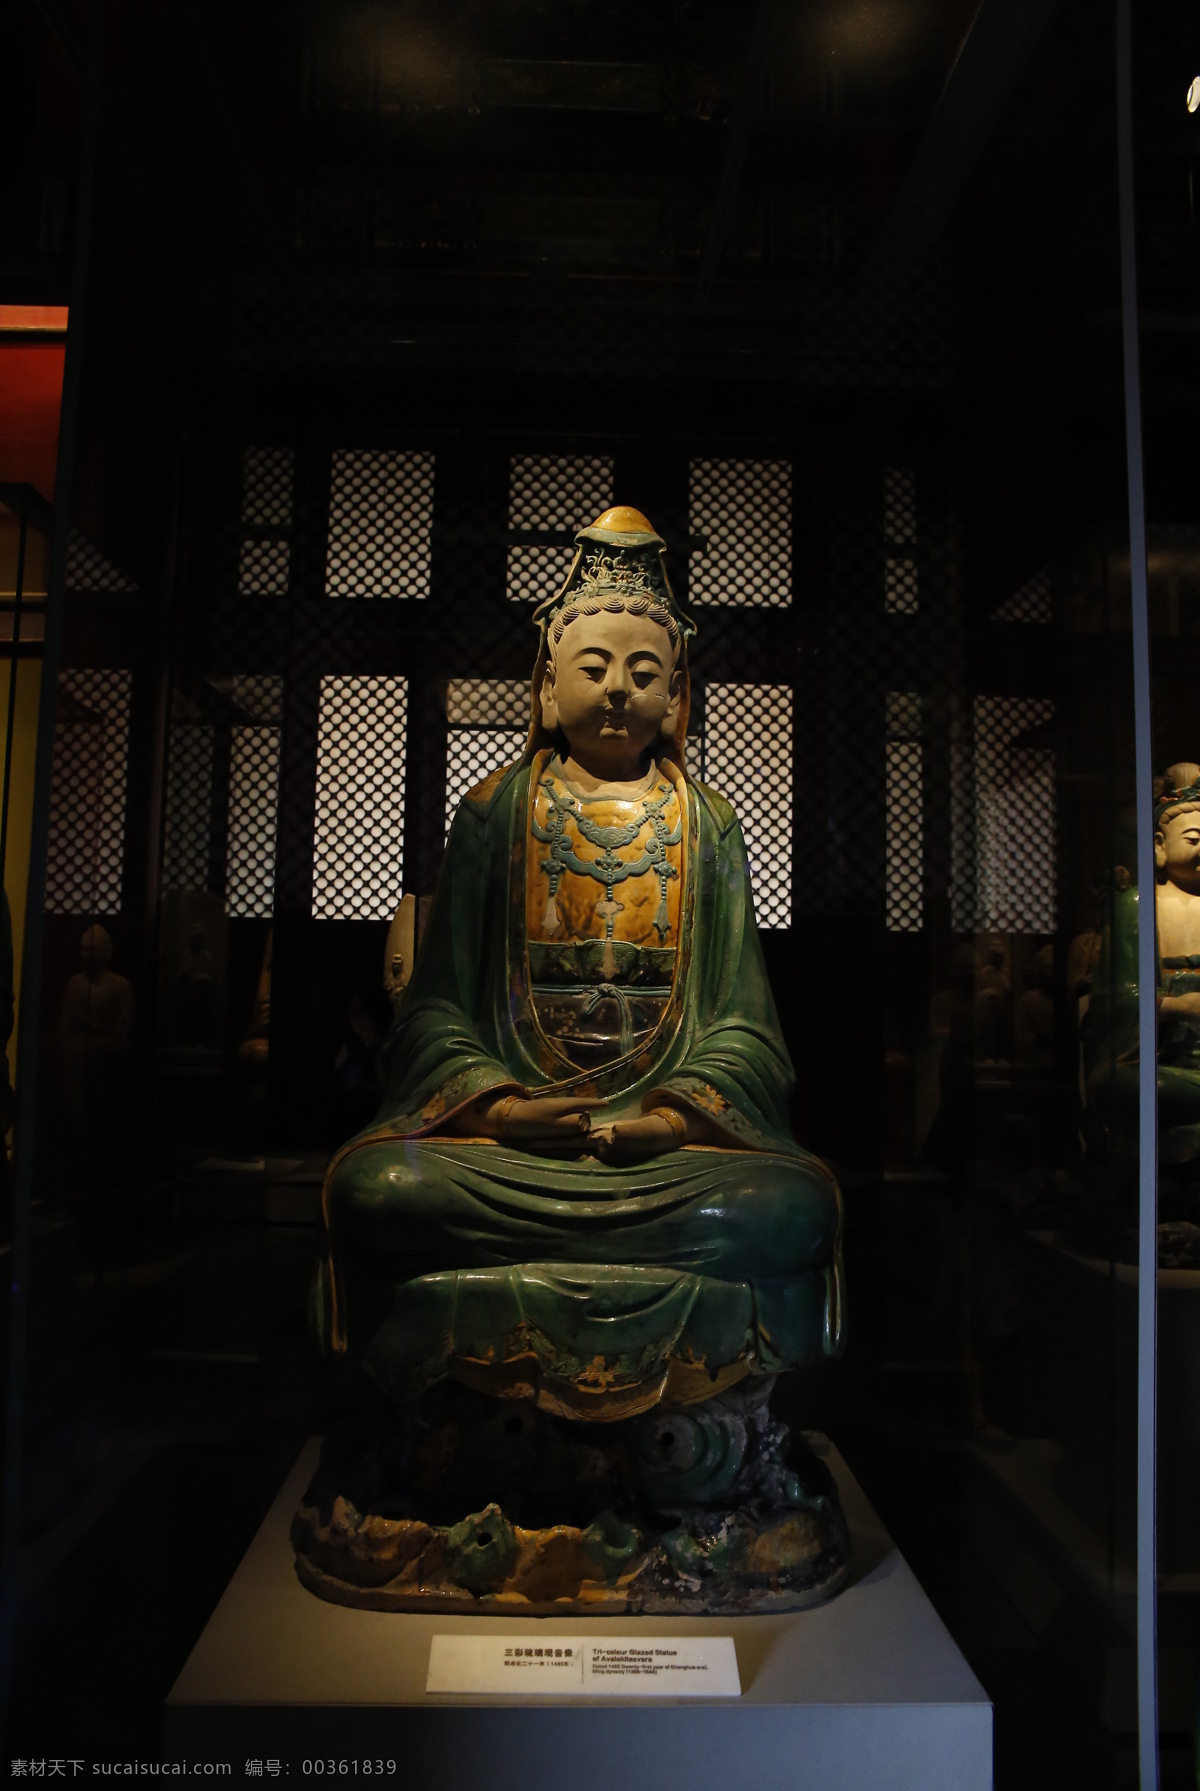 三彩 琉璃 观音 观音像 琉璃观音 故宫 故宫博物院 旅游摄影 国内旅游